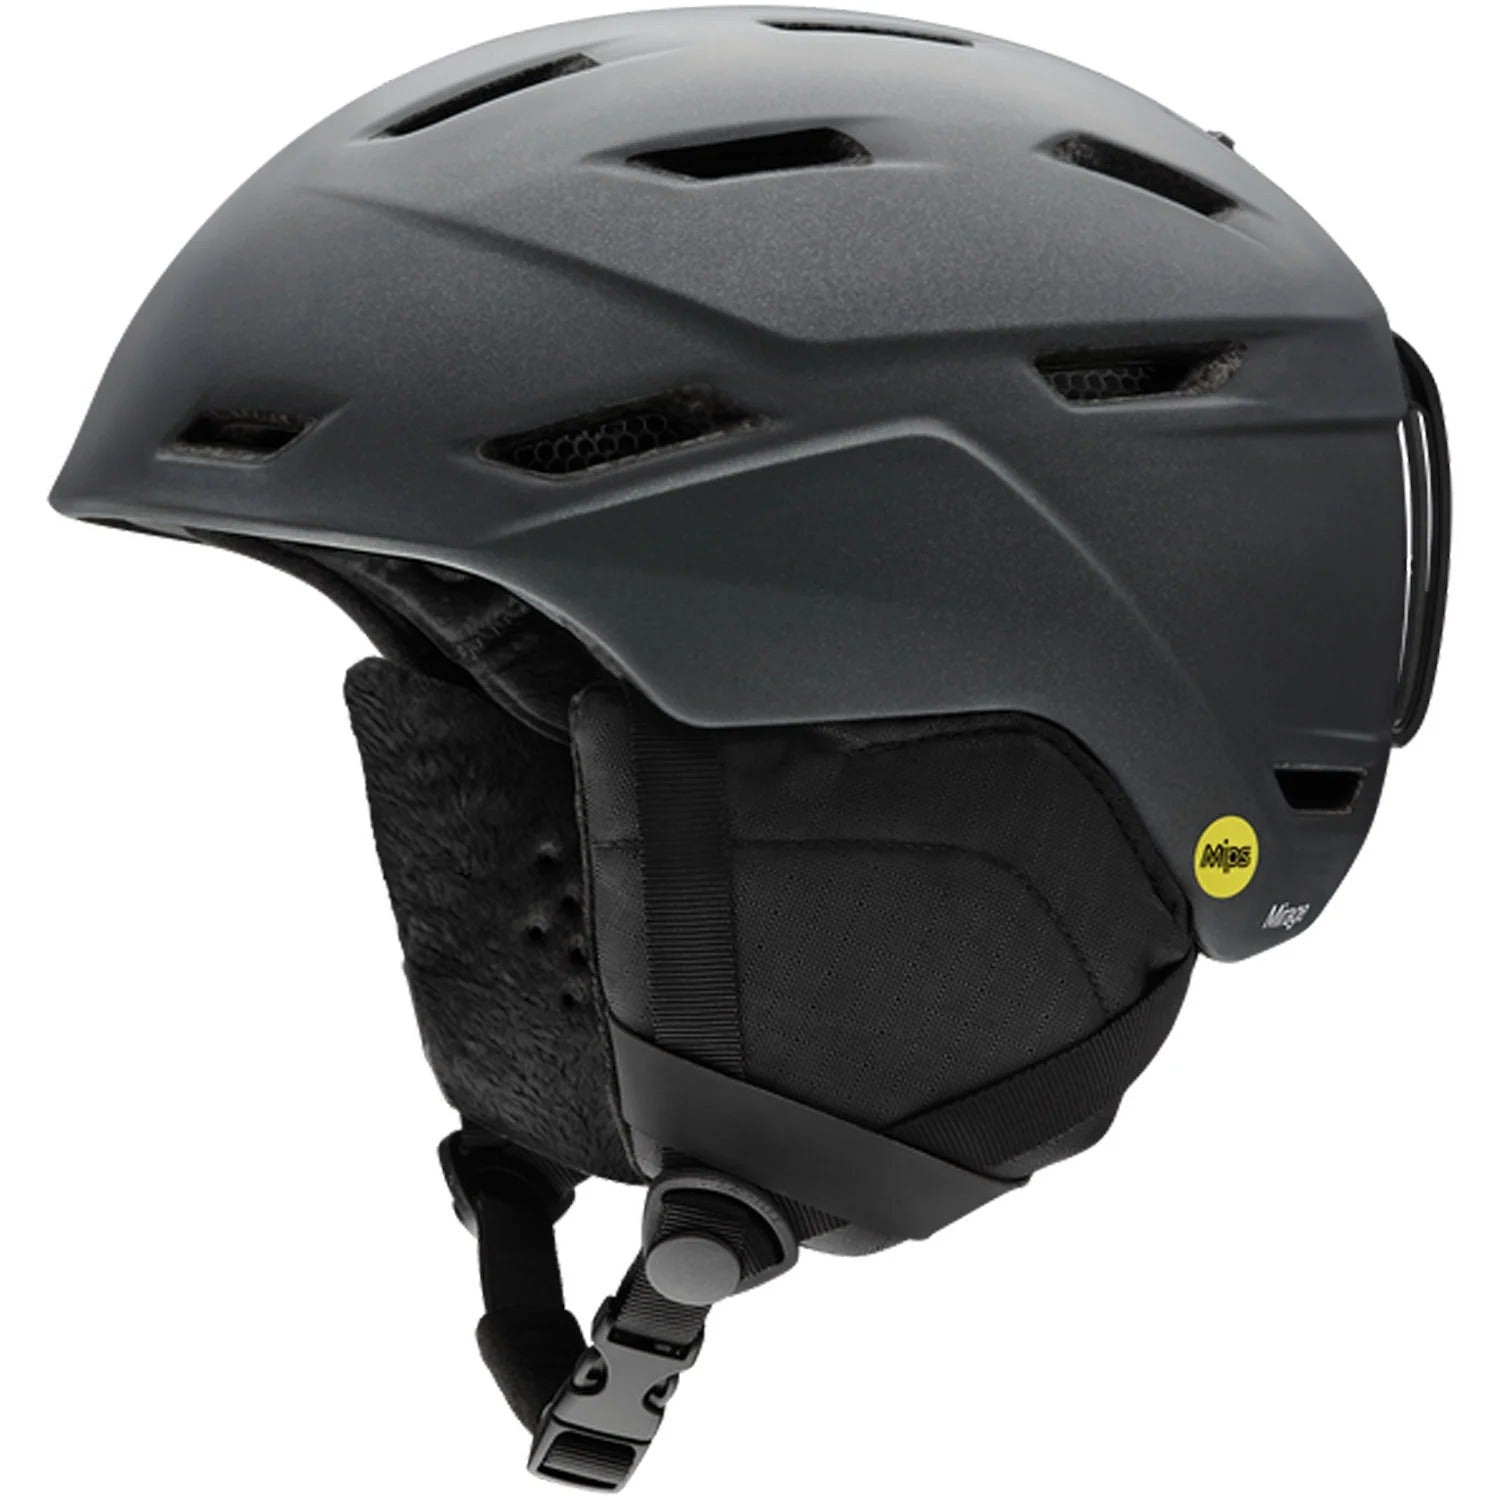 Mirage Mips Snow Helmet